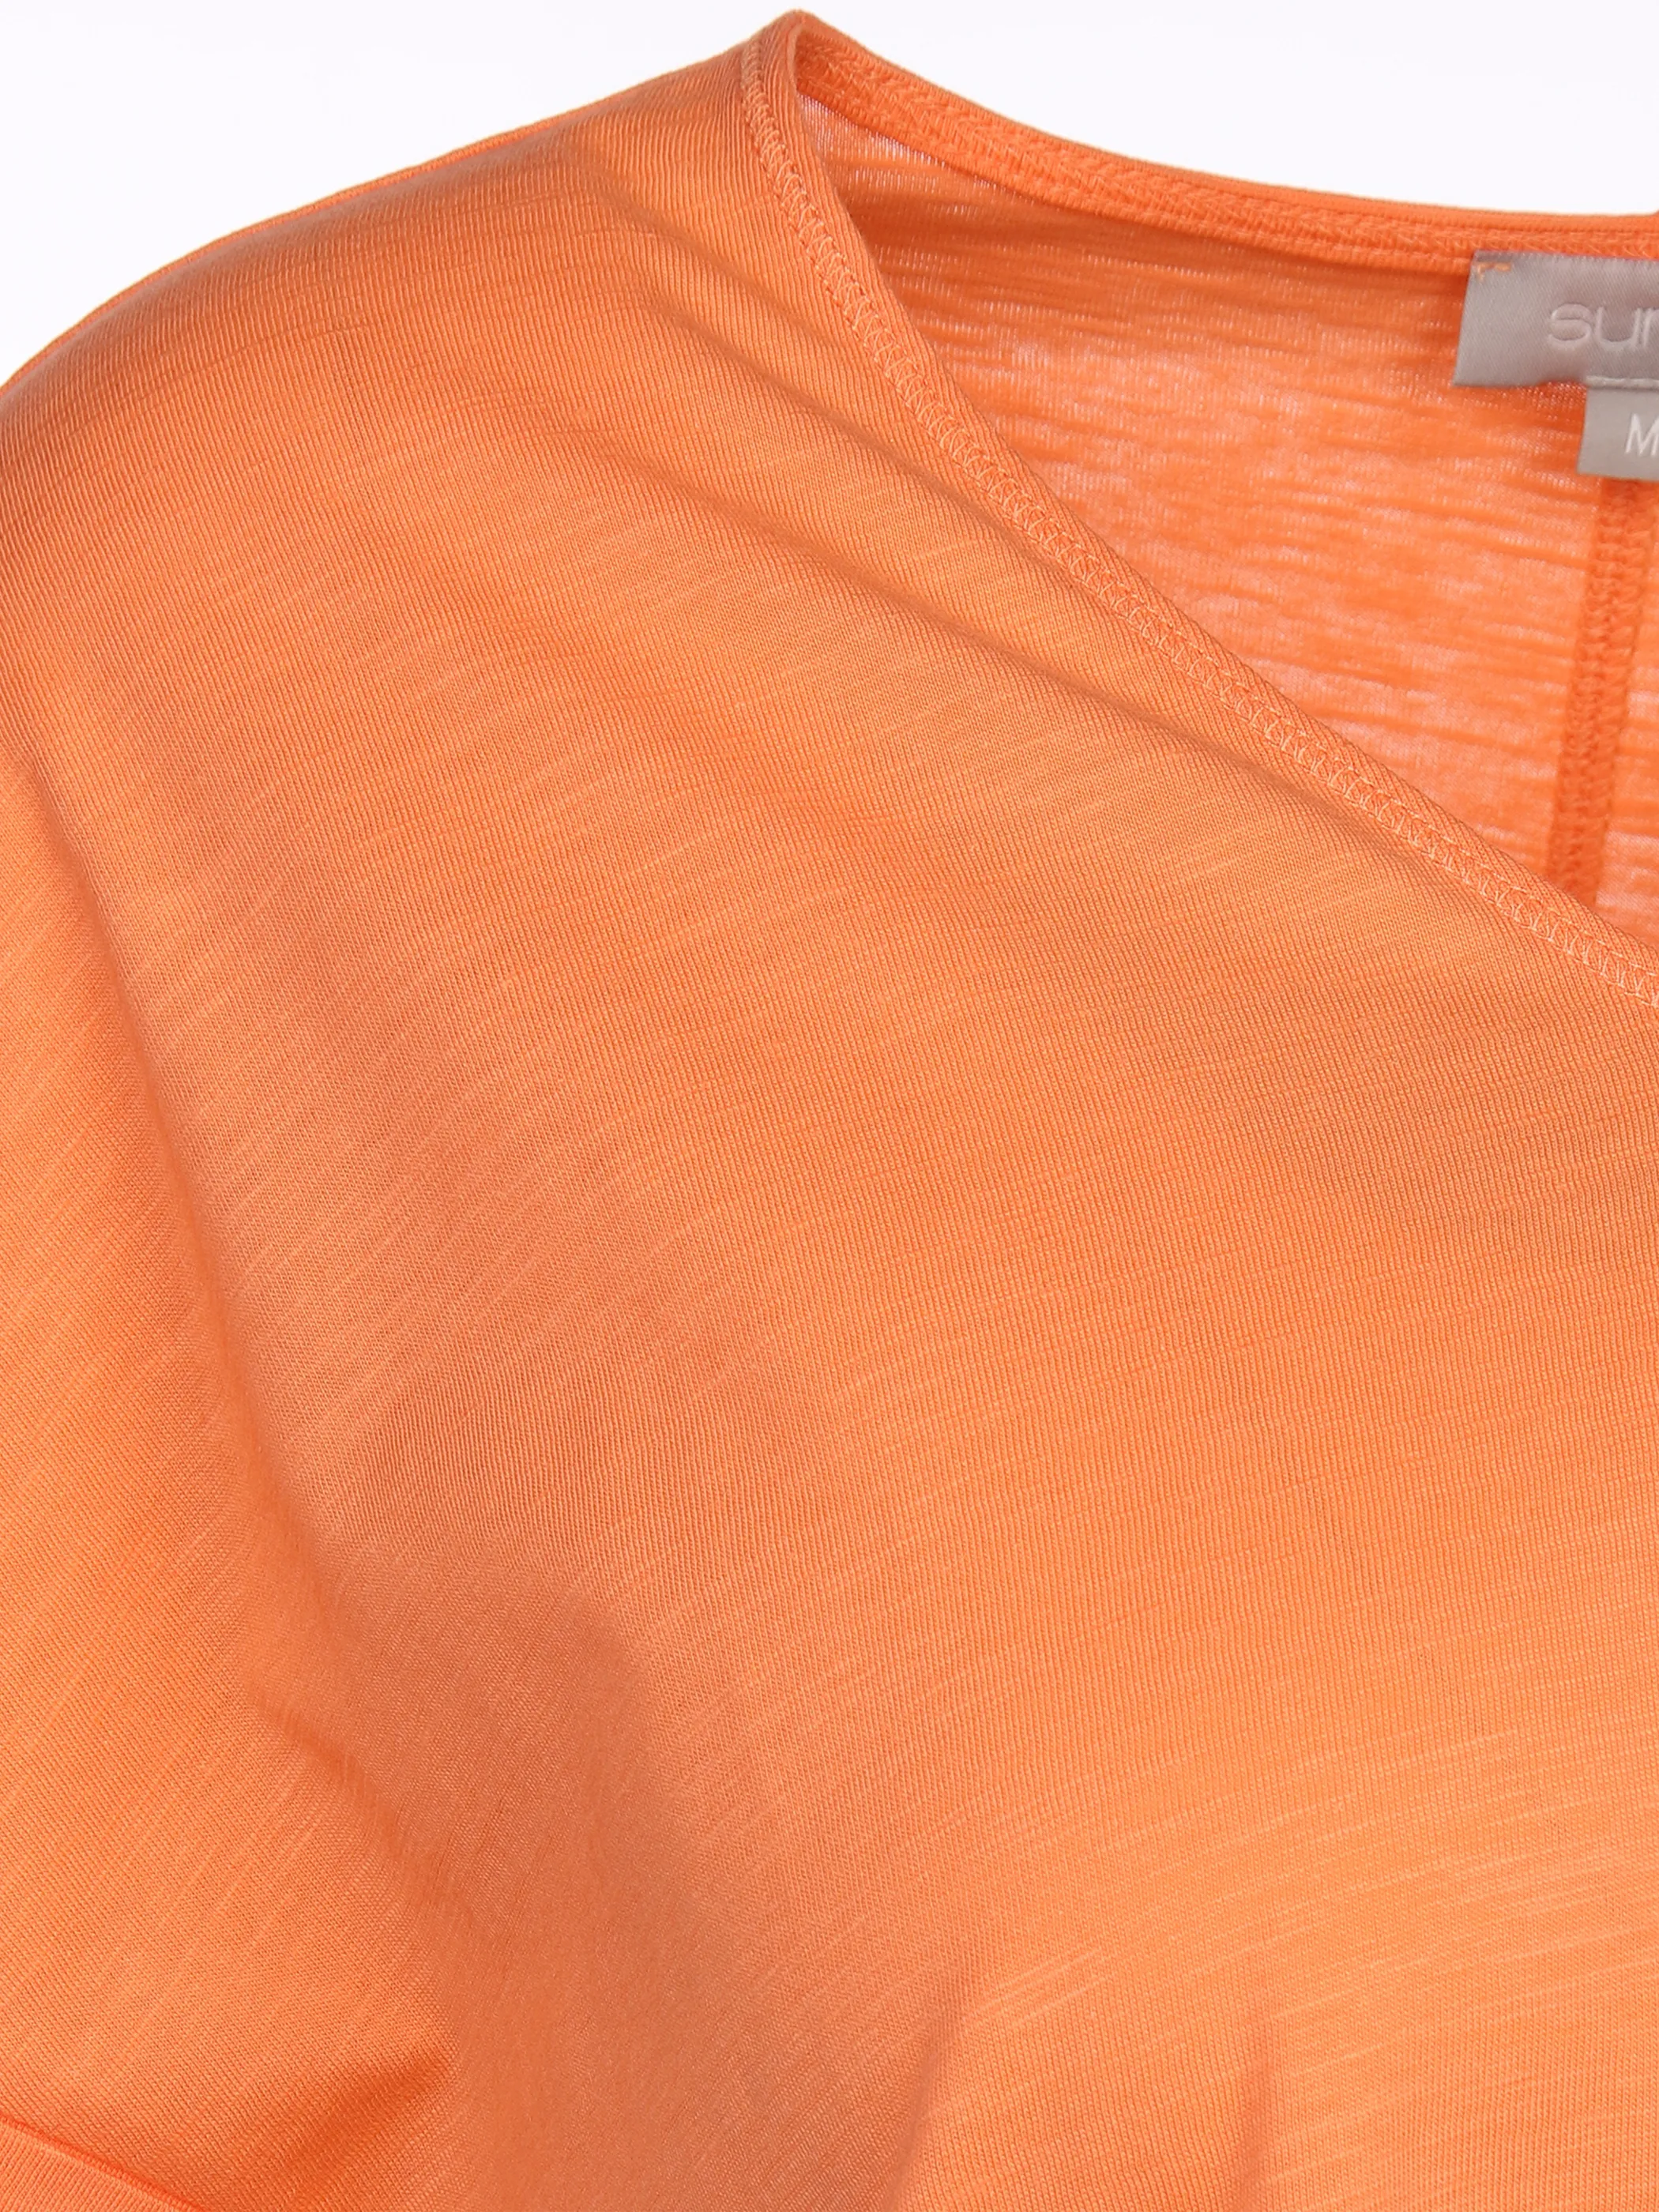 Sure Da-Shirt m.übergroßer Schulter Orange 873373 MELONE 3